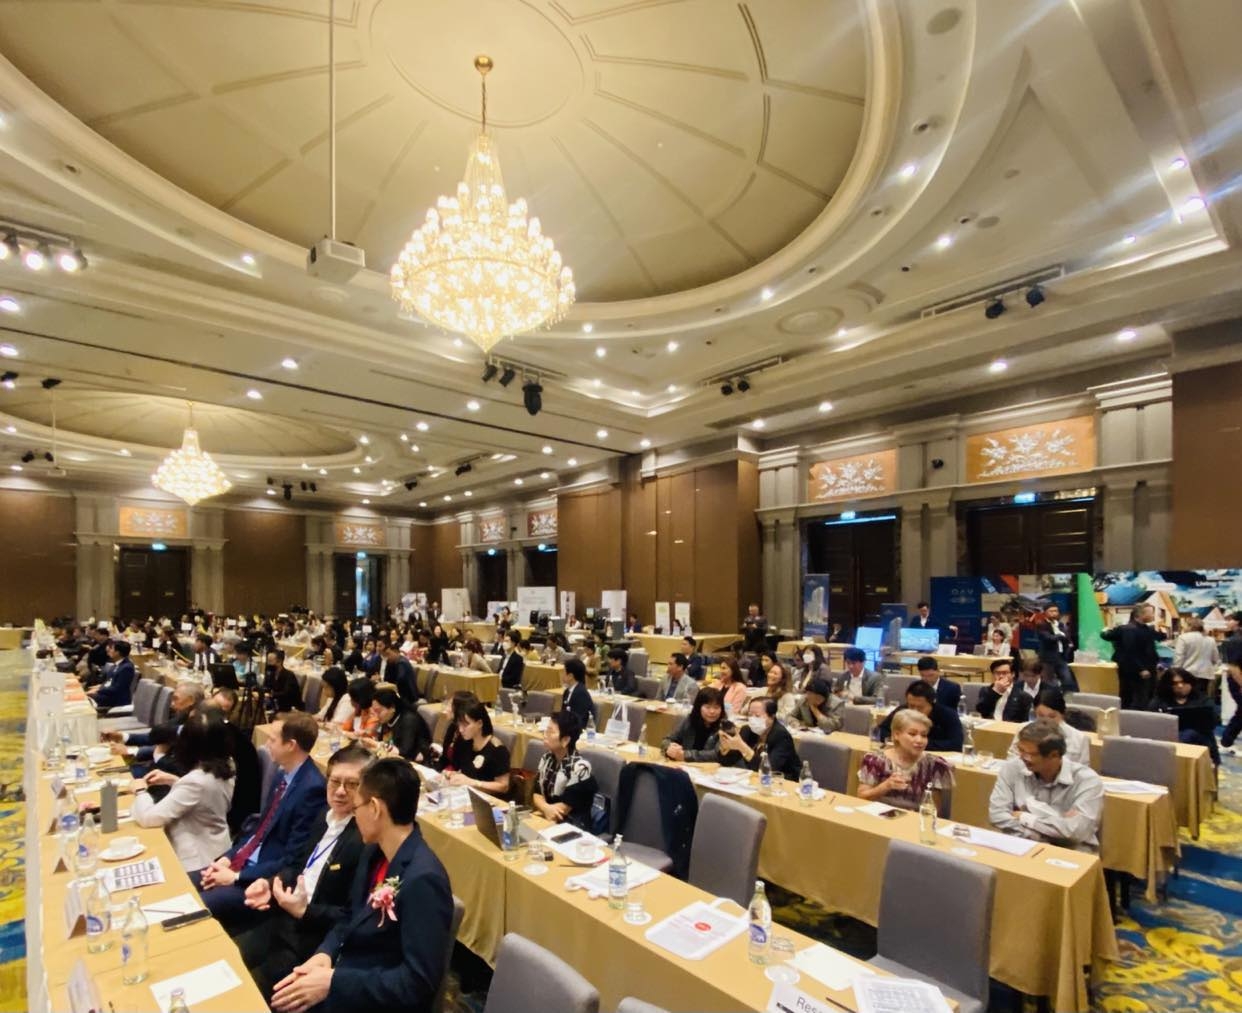 Khai mạc hội nghị Bất động sản châu Á – Thái Bình Dương tại Thái Lan